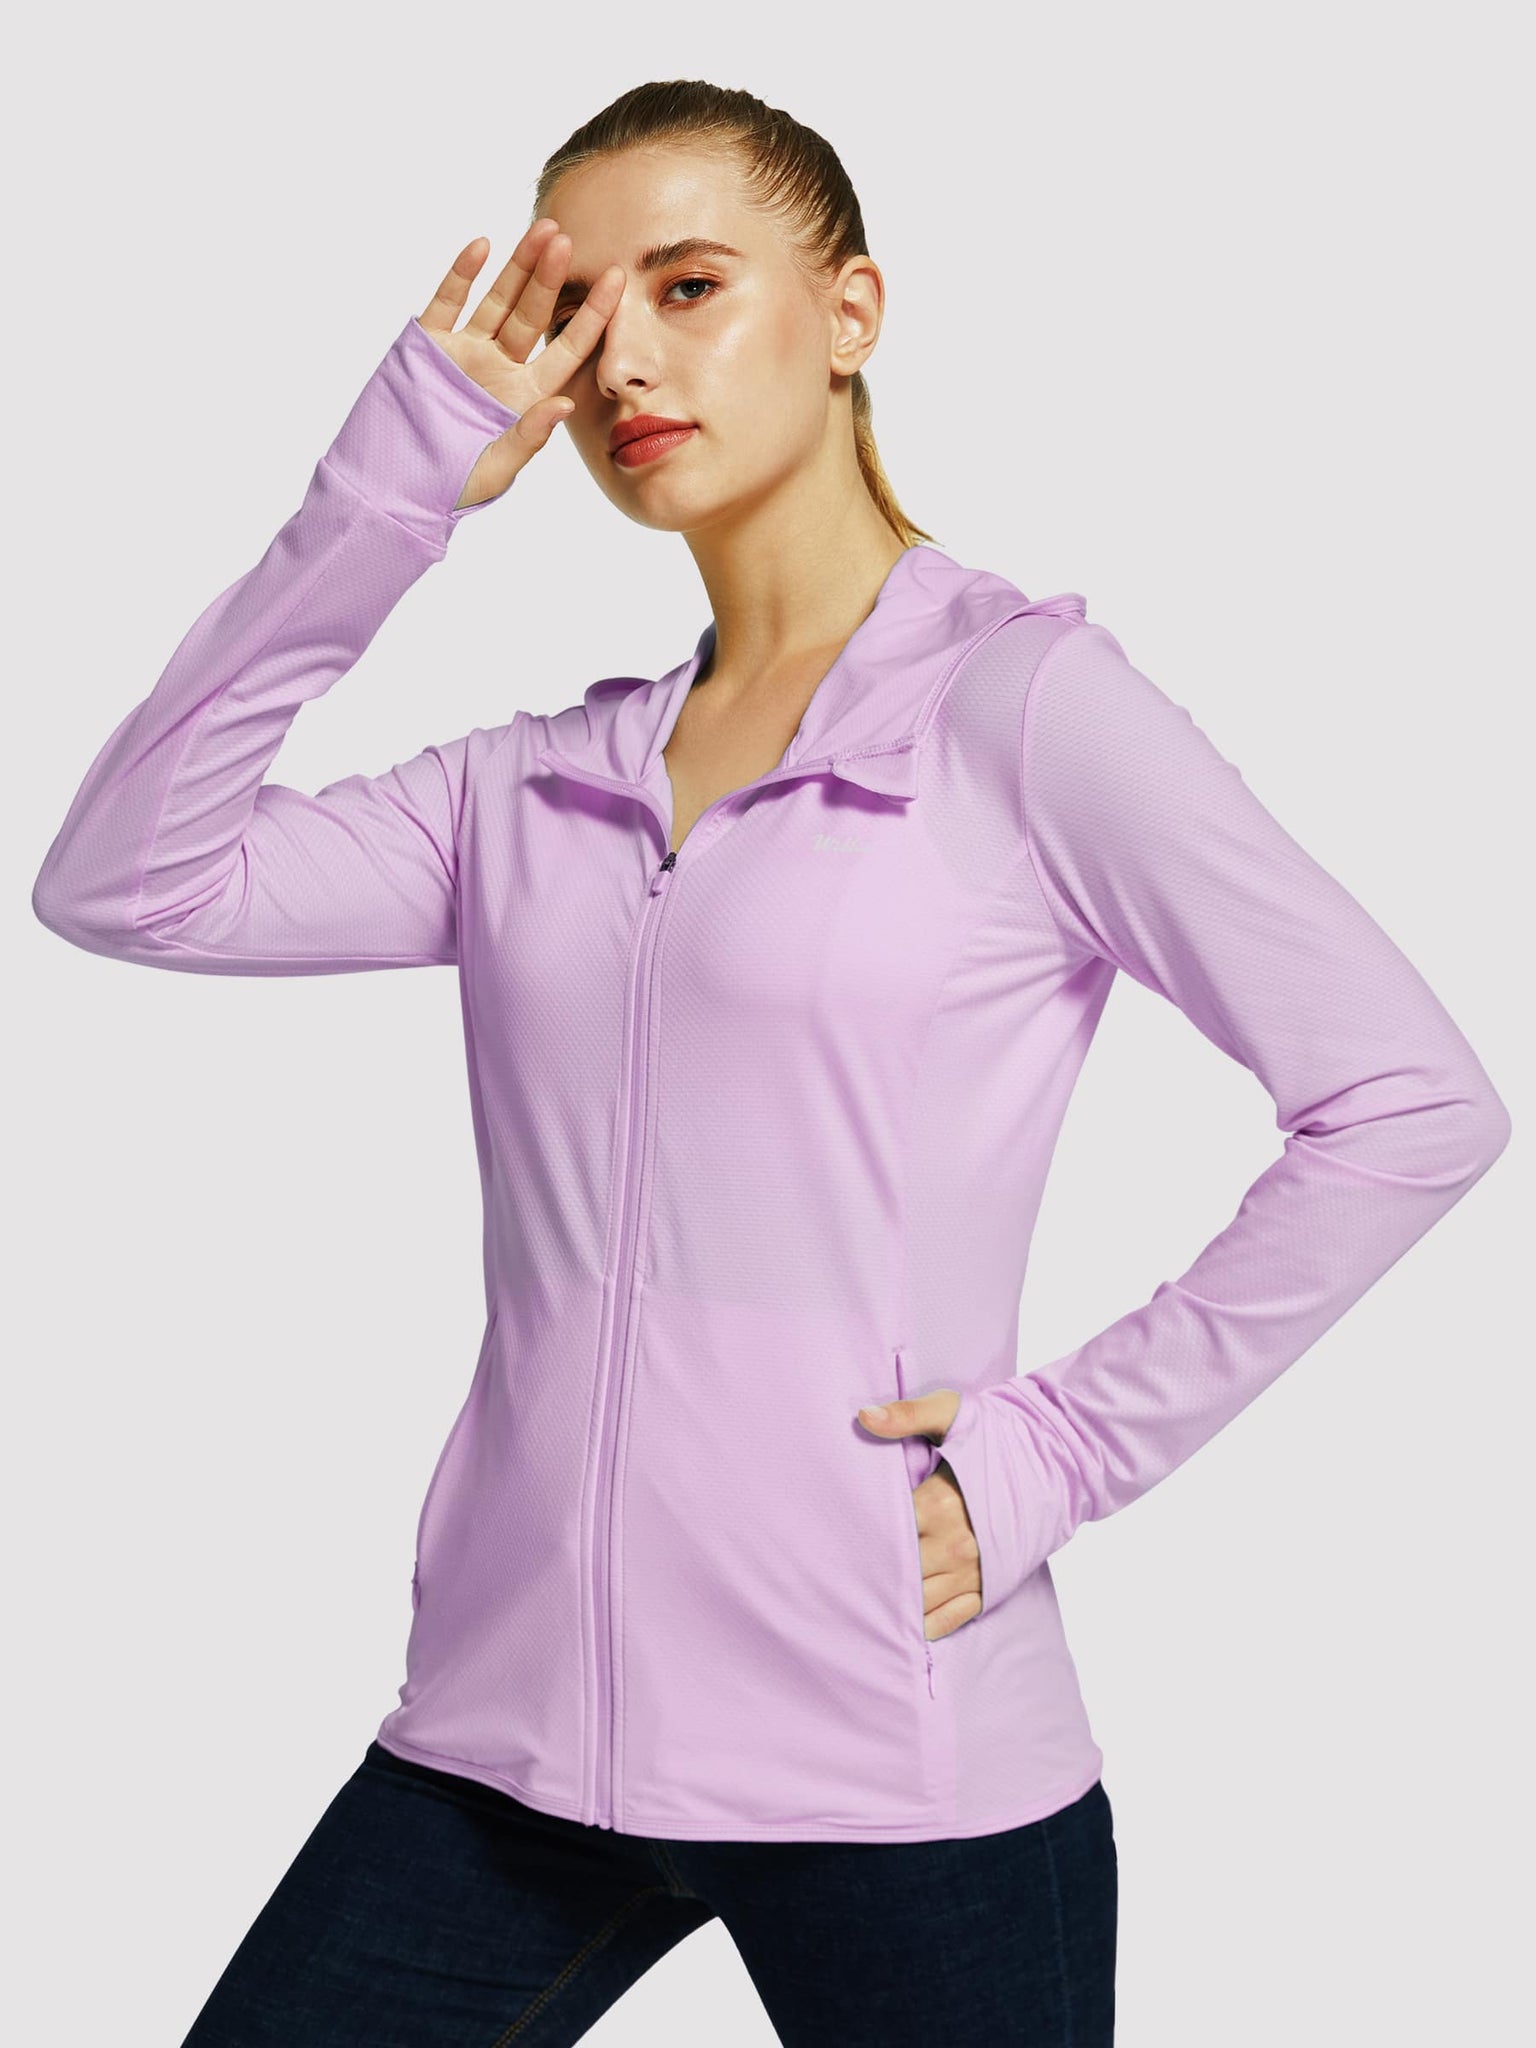 Willit Women's Outdoor Sun Protection Jacket Full Zip_Purple_model3